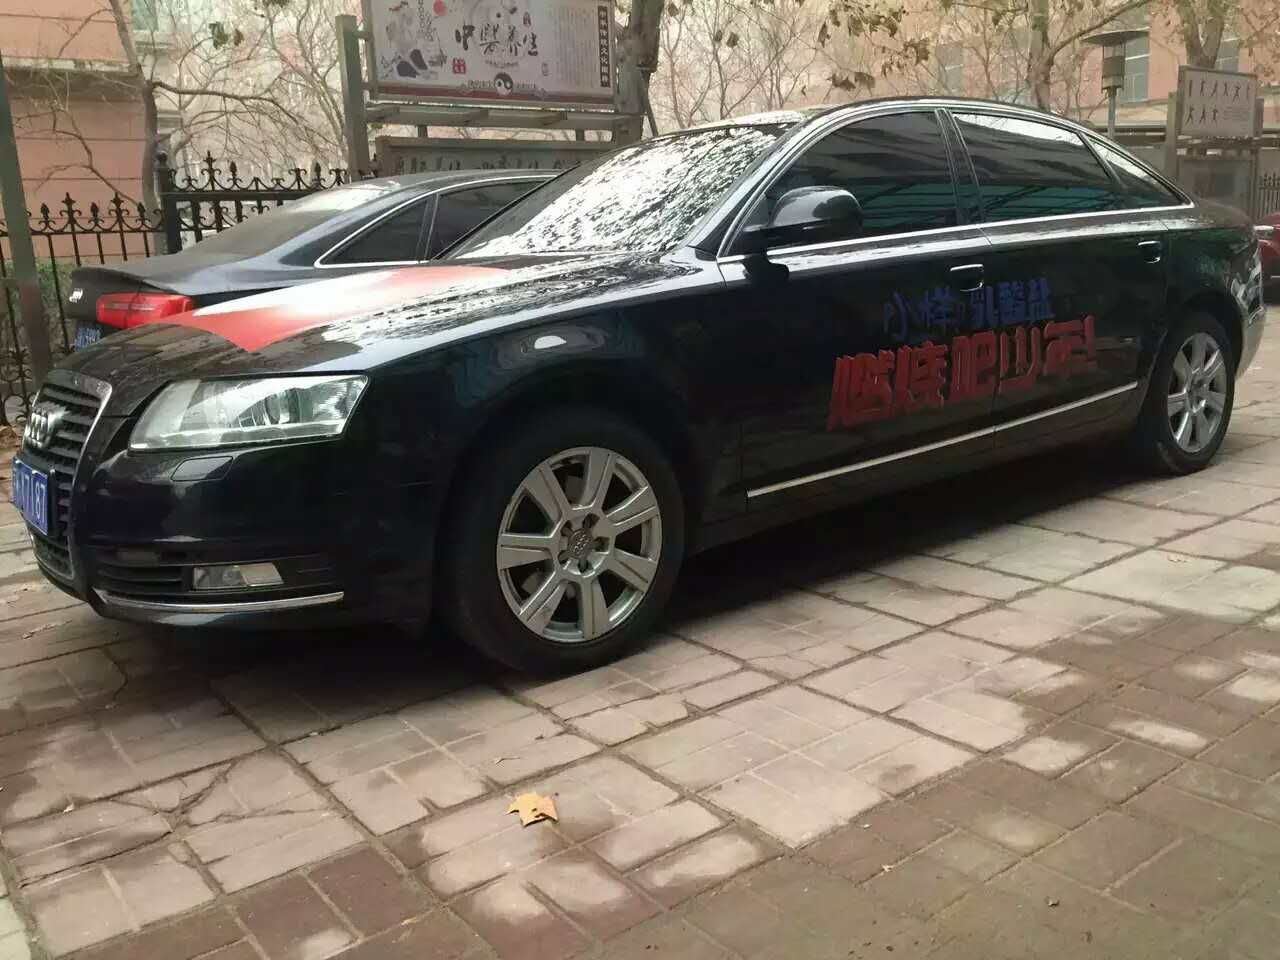 北京租车